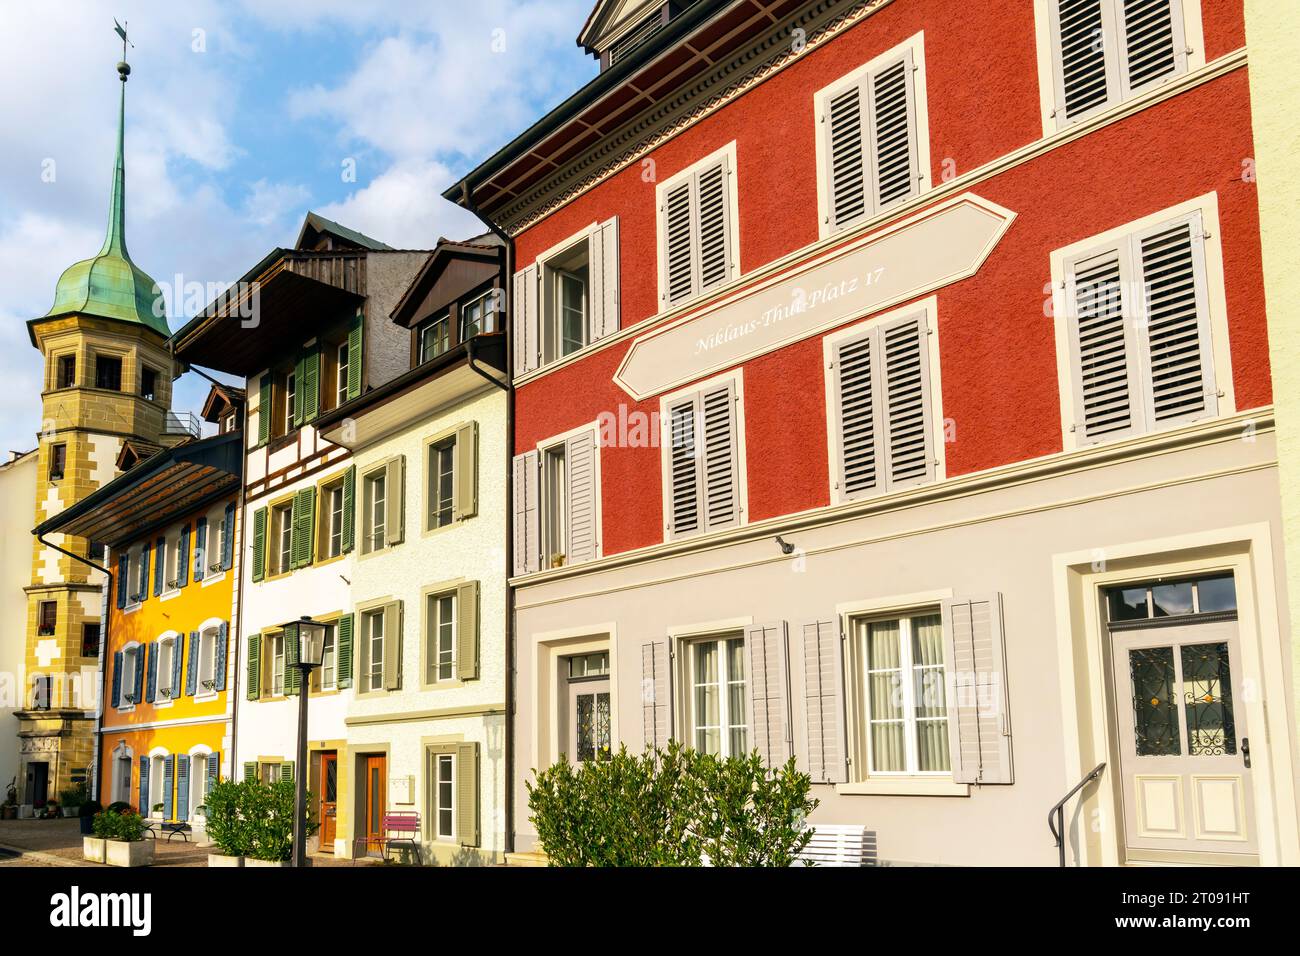 Farbenfrohe traditionelle Gebäude am Niklaus Thut Platz in der Altstadt von Zofingen, Aargau, Schweiz. Stockfoto